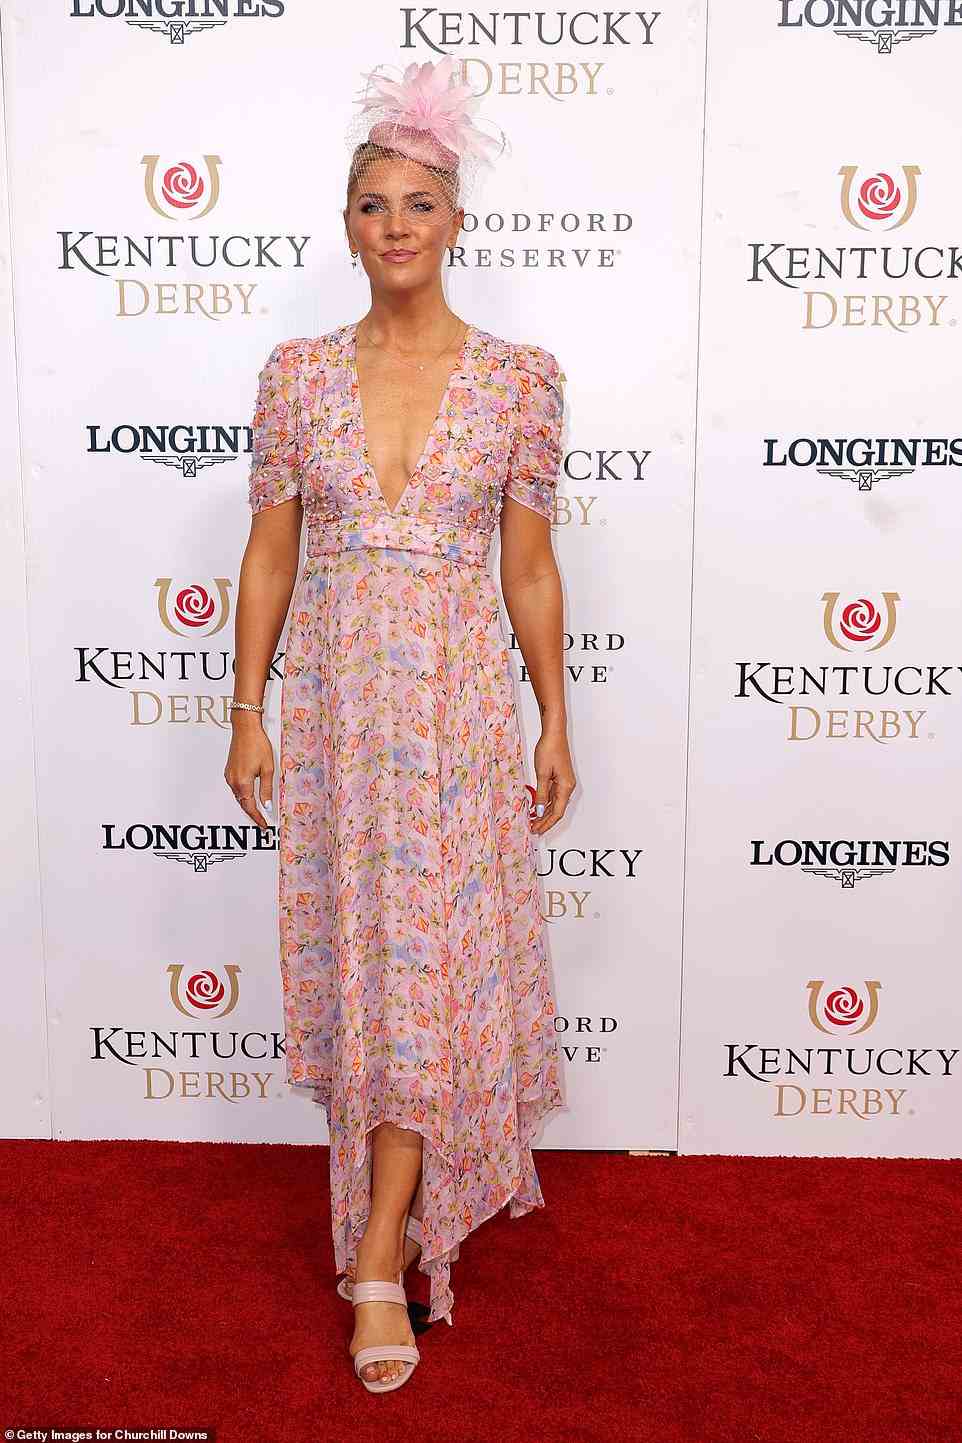 Pastelltraum: Amanda Kloots, 40, trug ein asymmetrisches pastellfarbenes Kleid mit tiefem Ausschnitt und kurzen Ärmeln, das sie mit einem schicken rosa Fascinator und offenen rosa Schuhen kombinierte